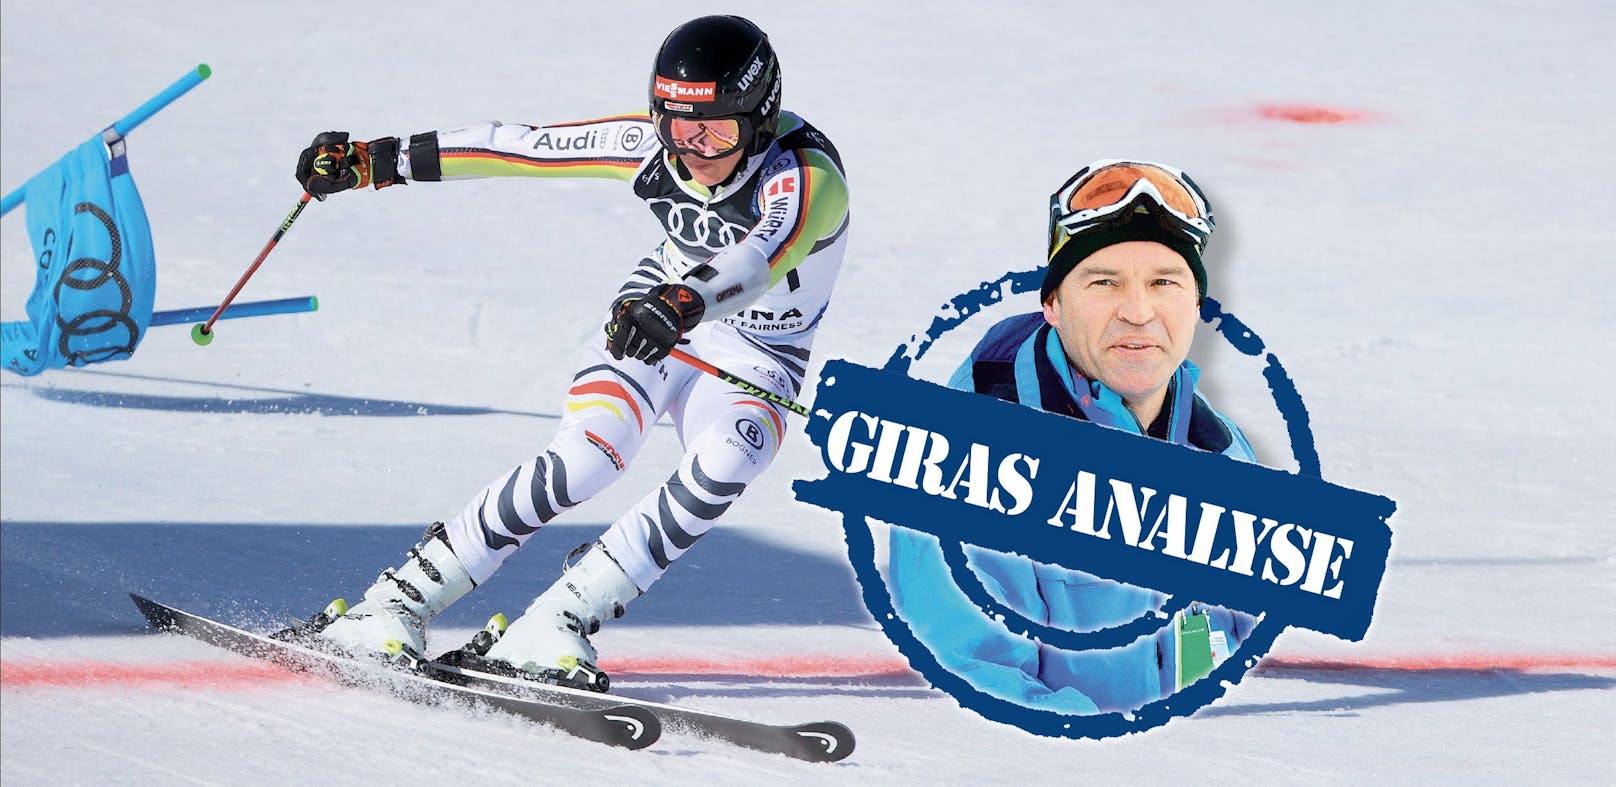 Girardelli: "Die Probleme im Skisport liegen tiefer."